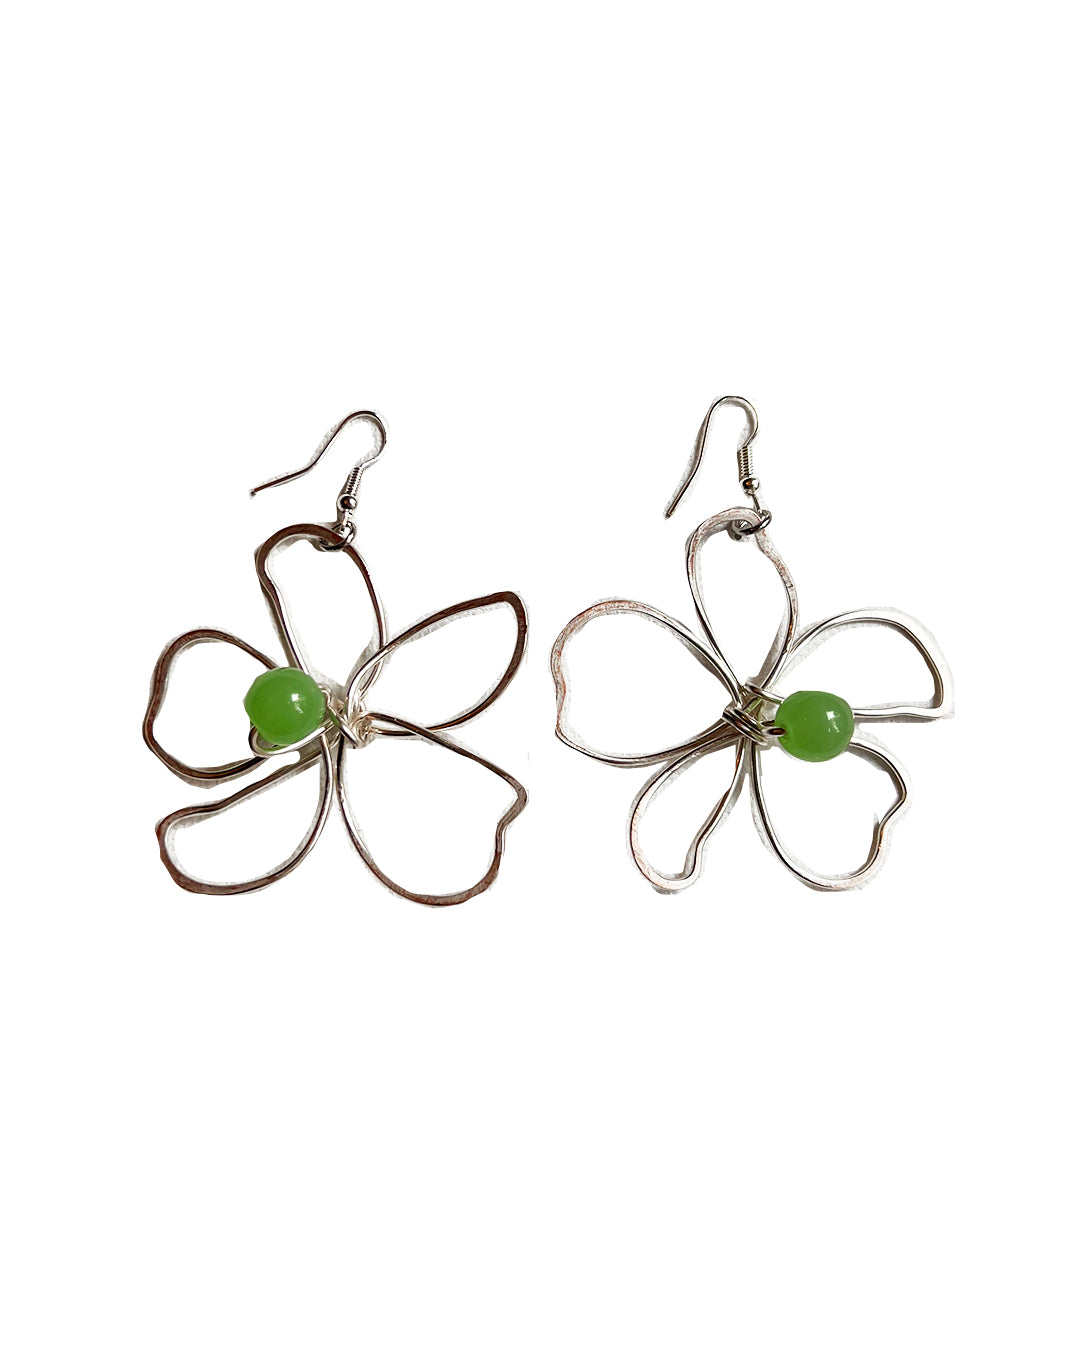 silver handmade flower earrings Large green glass beads